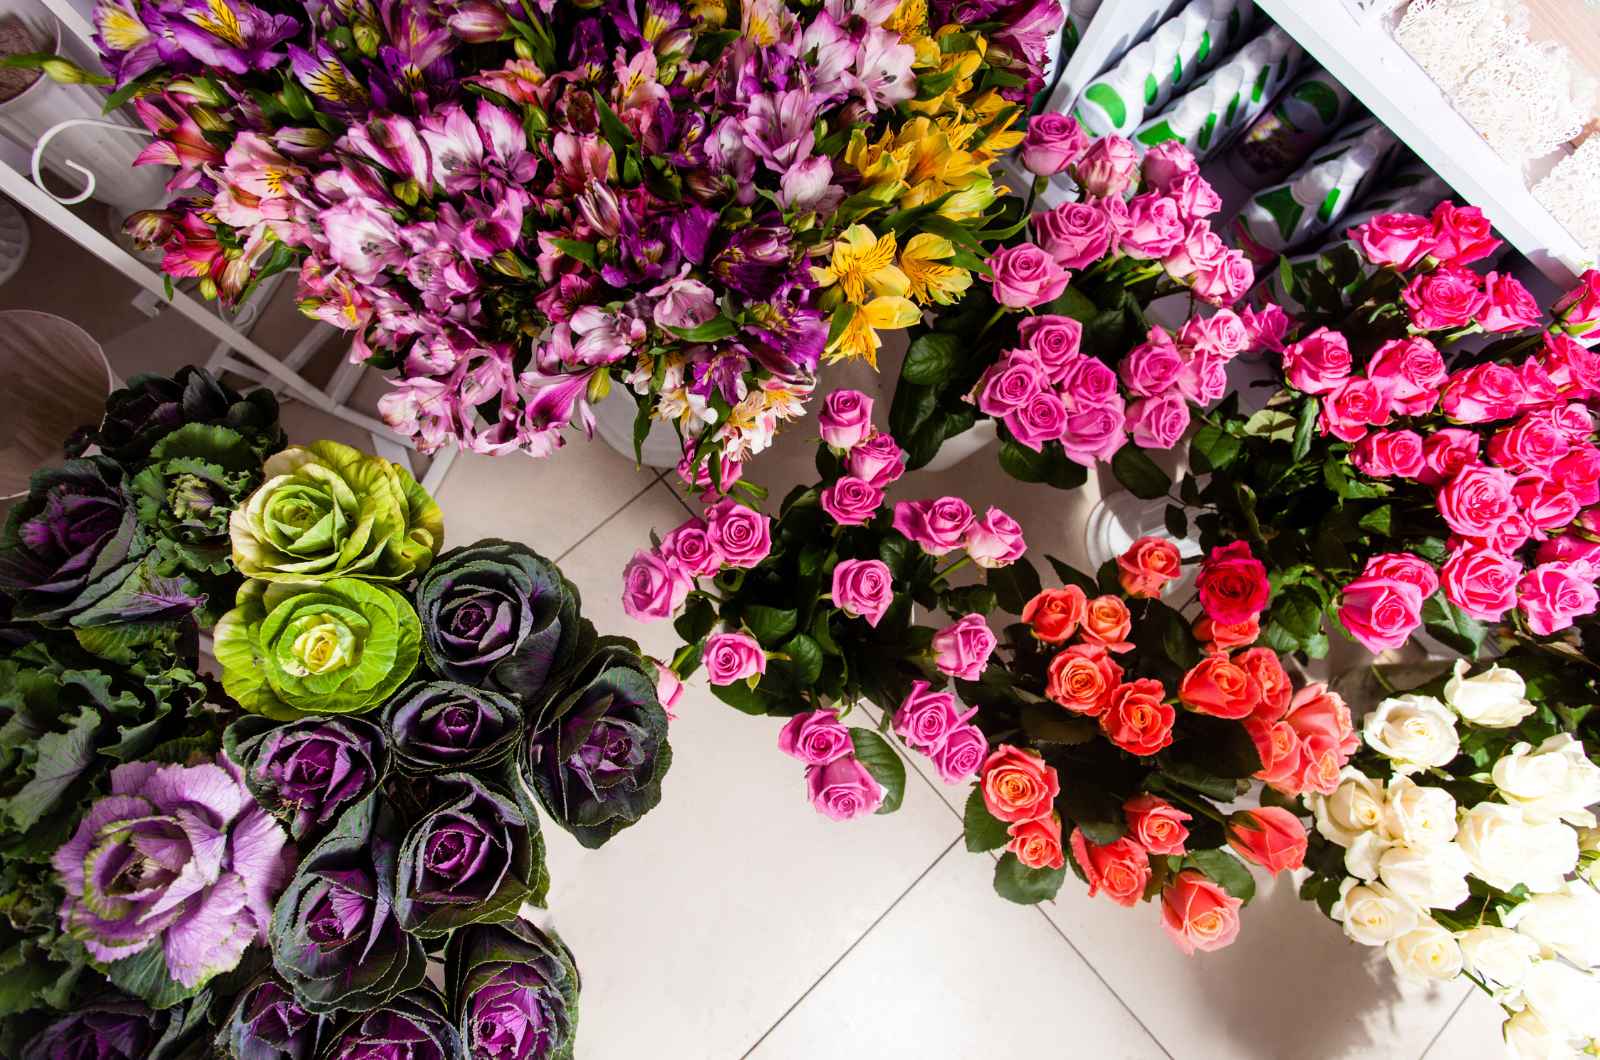 גלו את הקסם של חנויות הפרחים בתל אביב: חוויה פרחונית שלא תשכחו